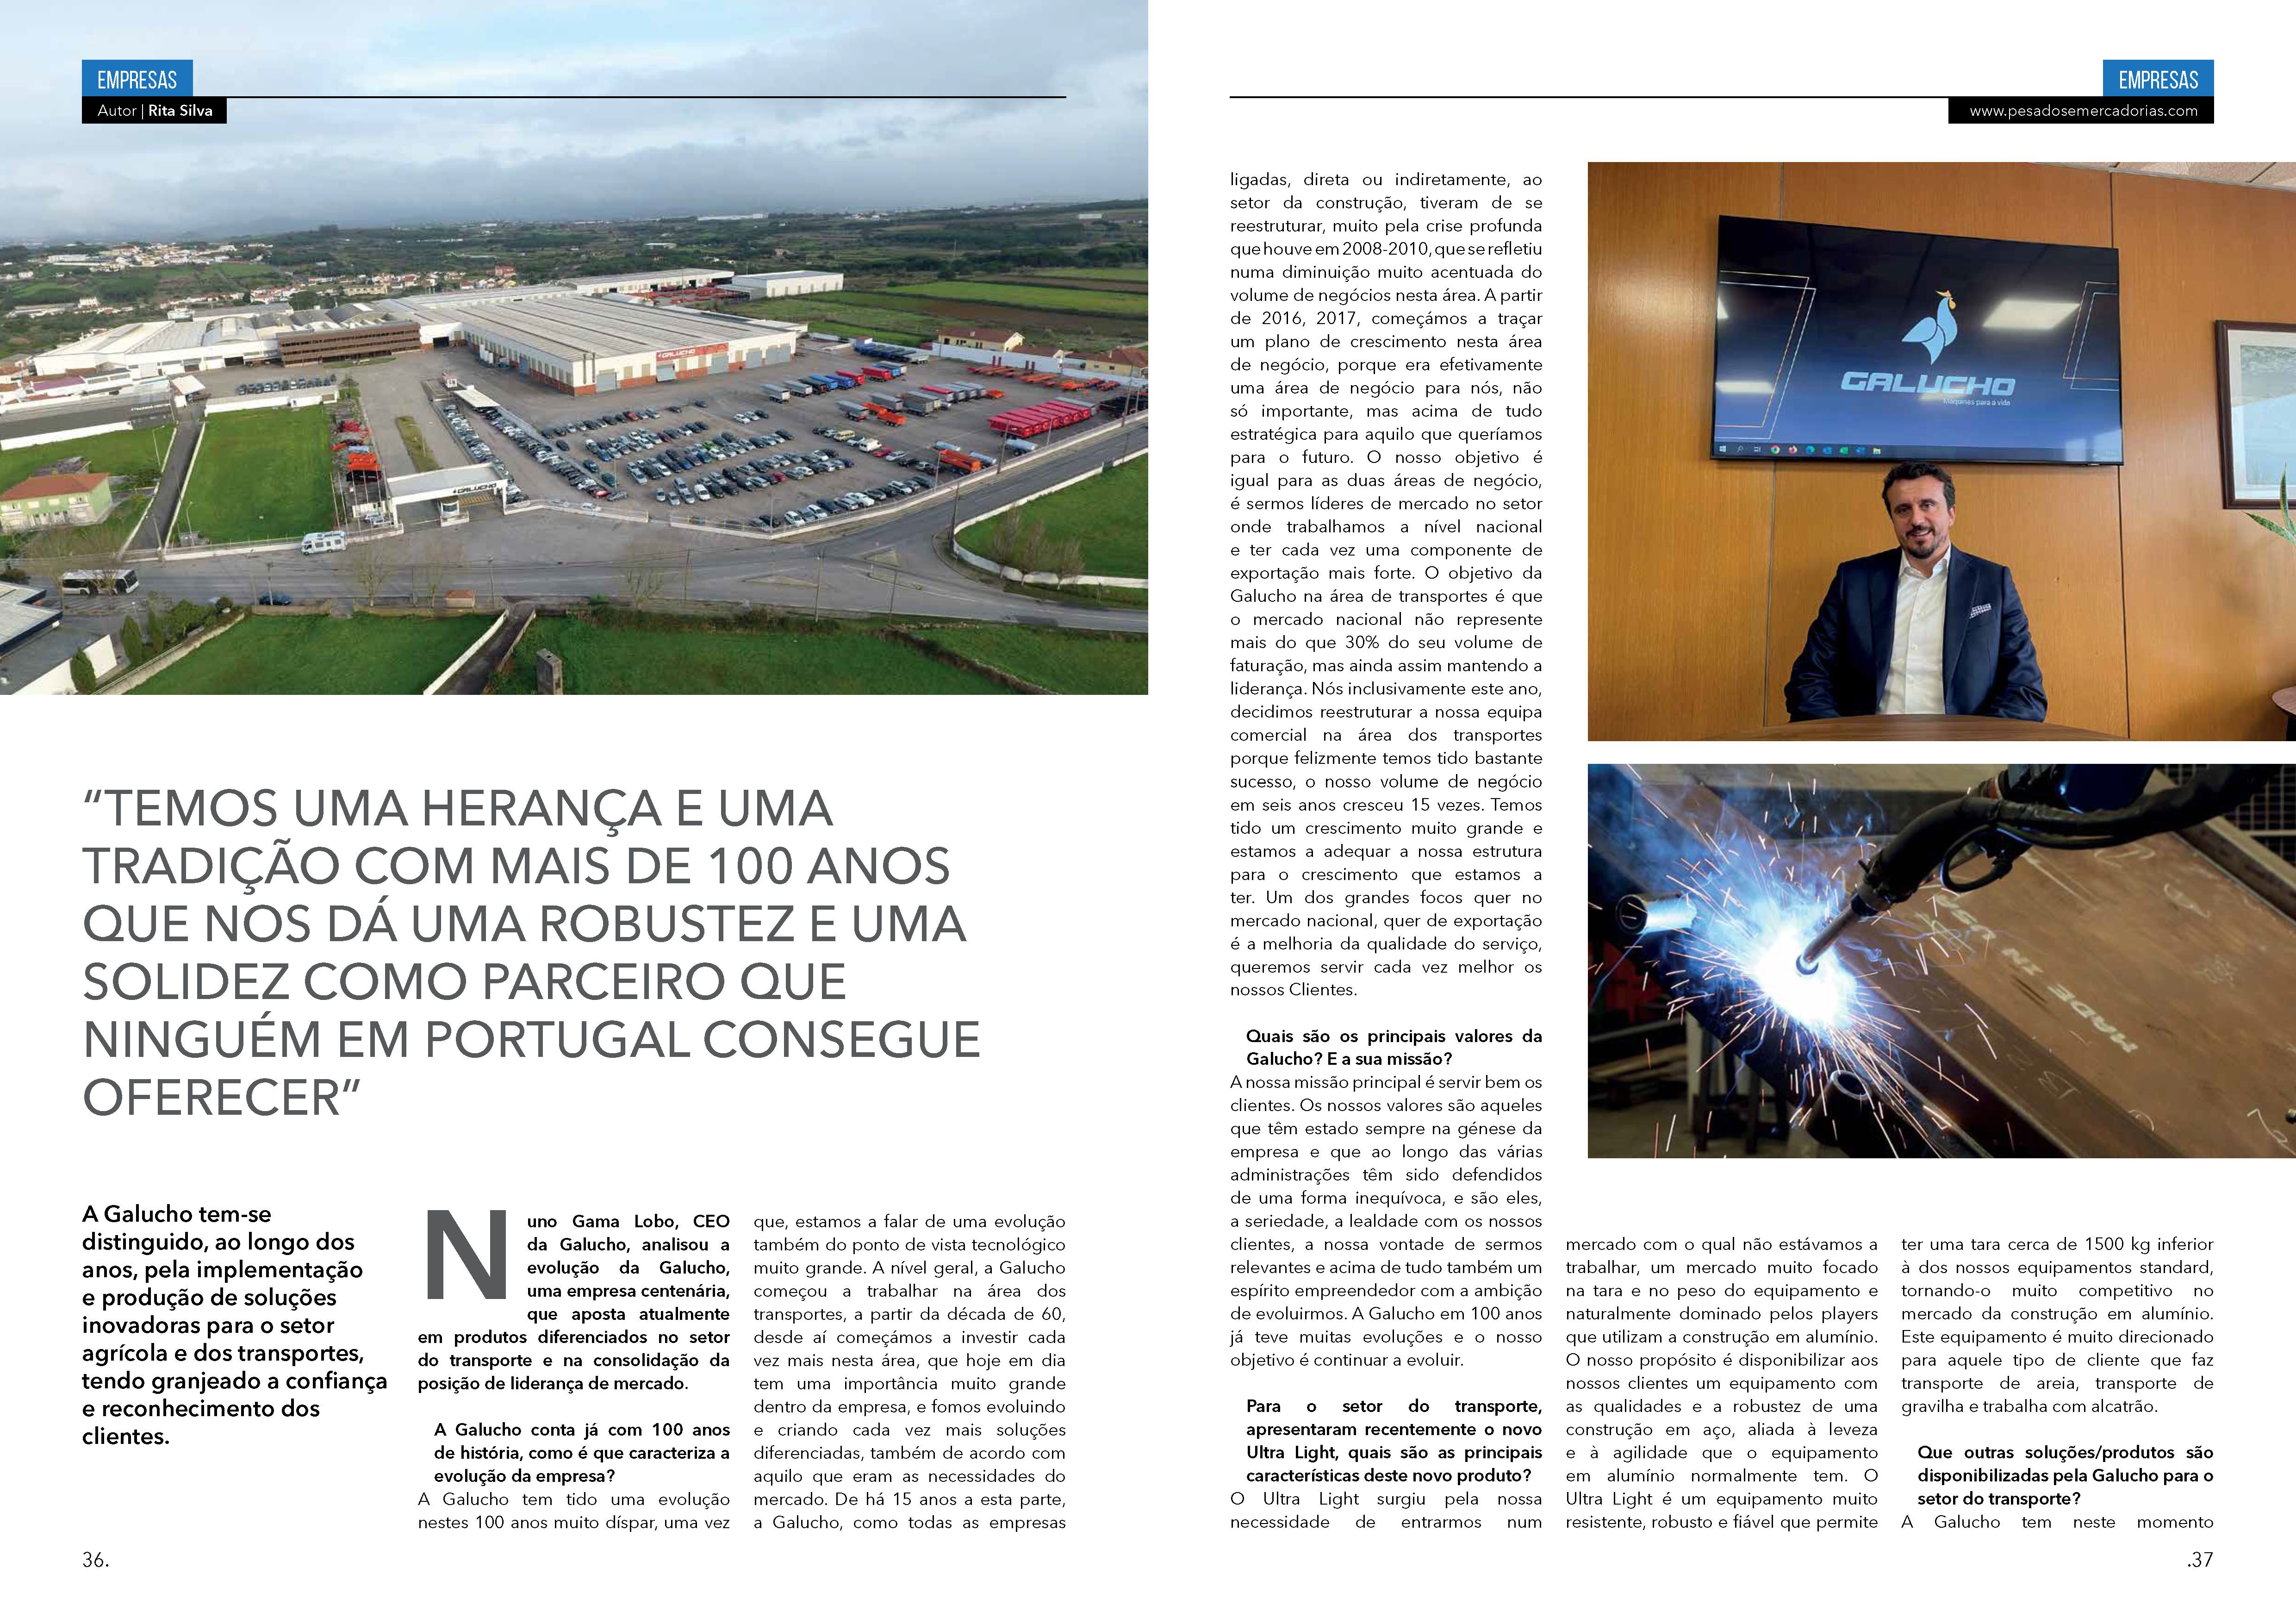 Galucho dans le numéro 34 du magazine Pesados & Mercadorias